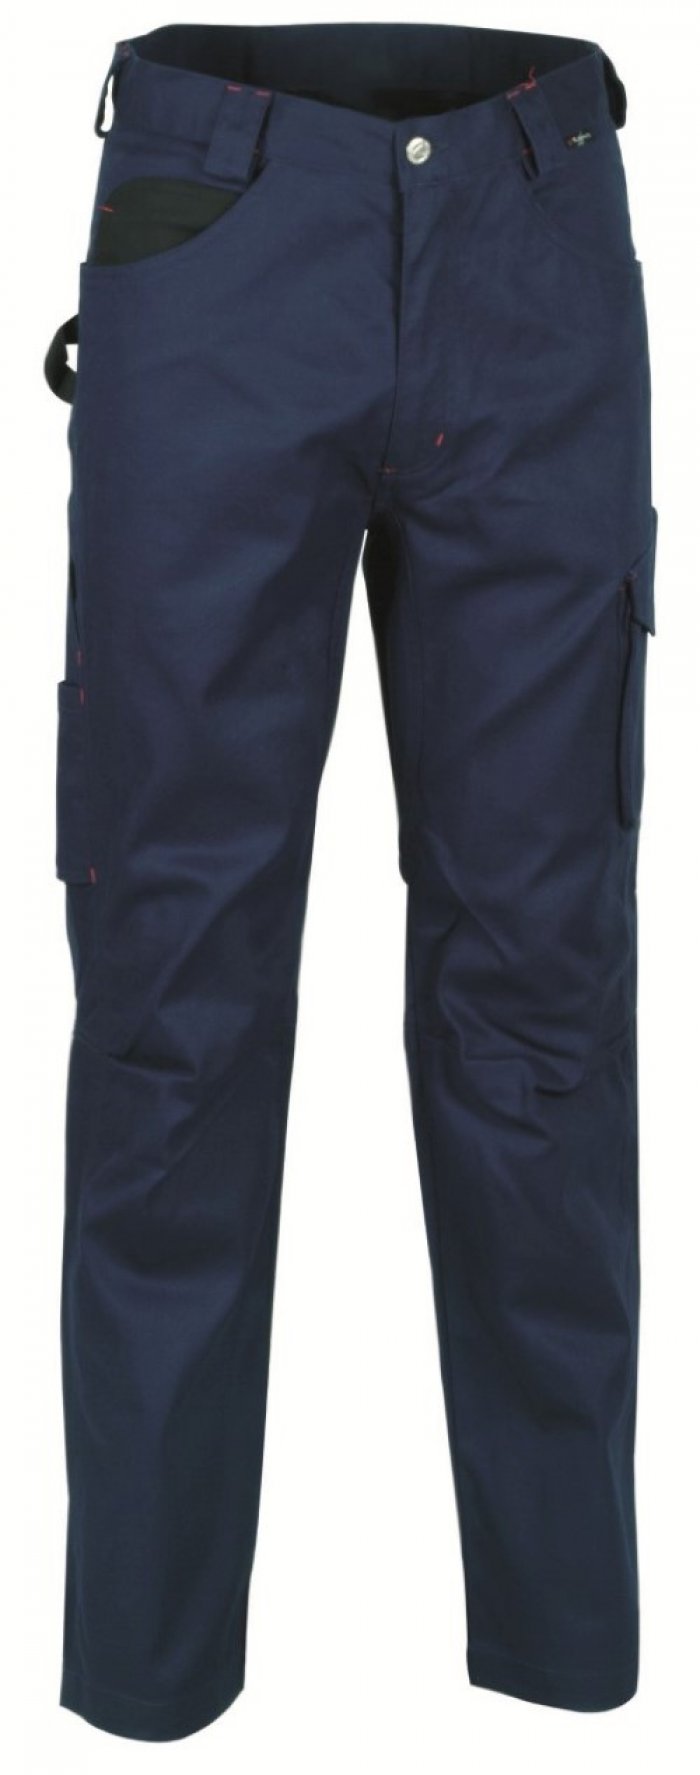 Pantalone drill colore navy tg.44